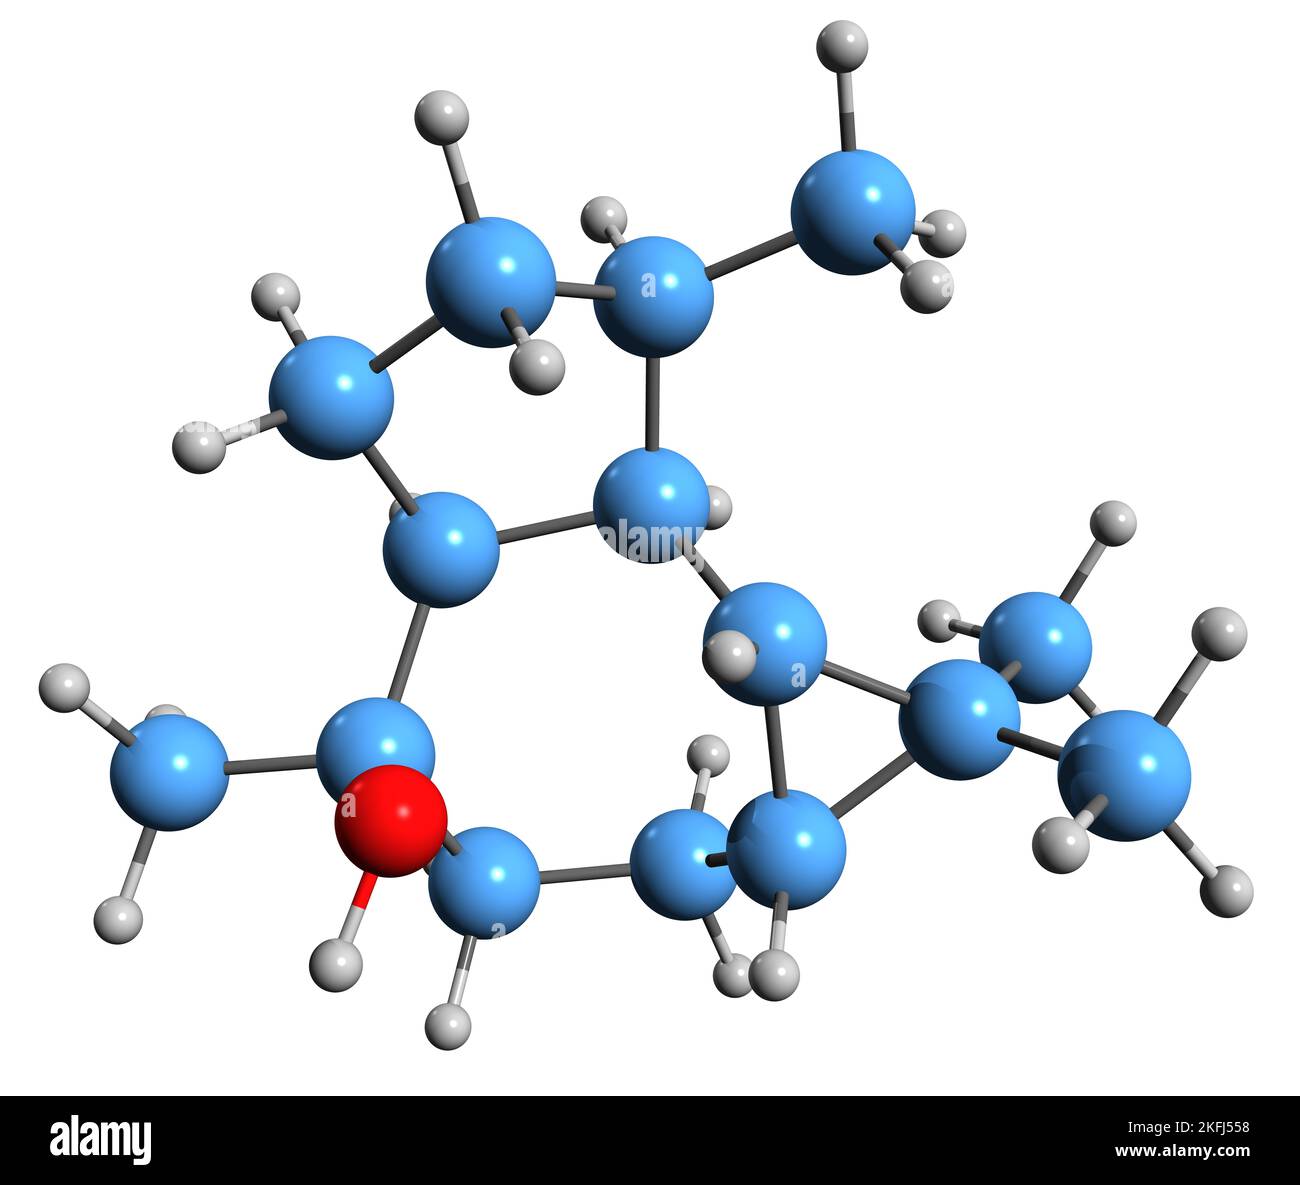 3D immagine della formula scheletrica di Ledol - struttura chimica molecolare del sesquiterpene velenoso isolato su sfondo bianco Foto Stock